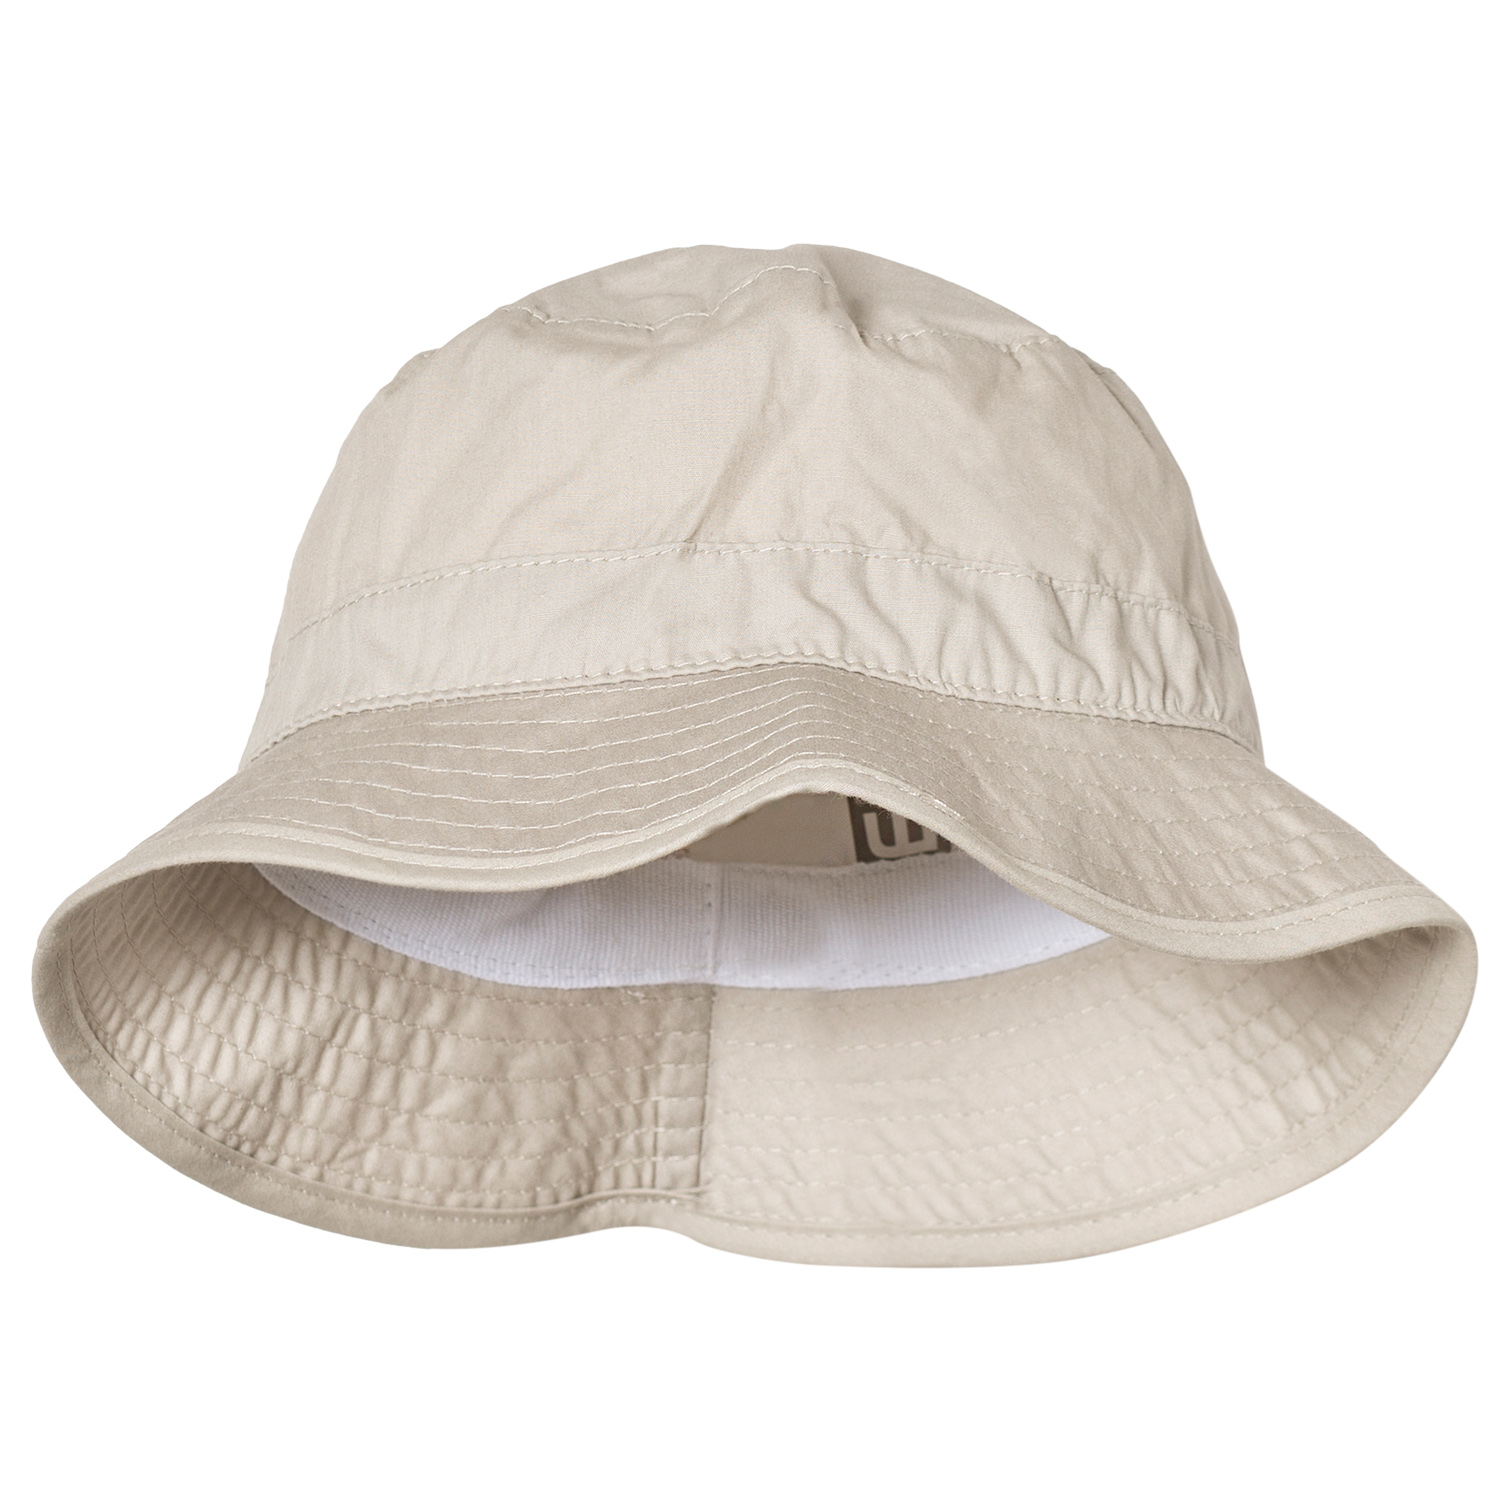 Melton UV30 kaitsega suvemüts, helebeez kaabu Lasteriided - HellyK - Kvaliteetsed lasteriided, villariided, barefoot jalatsid